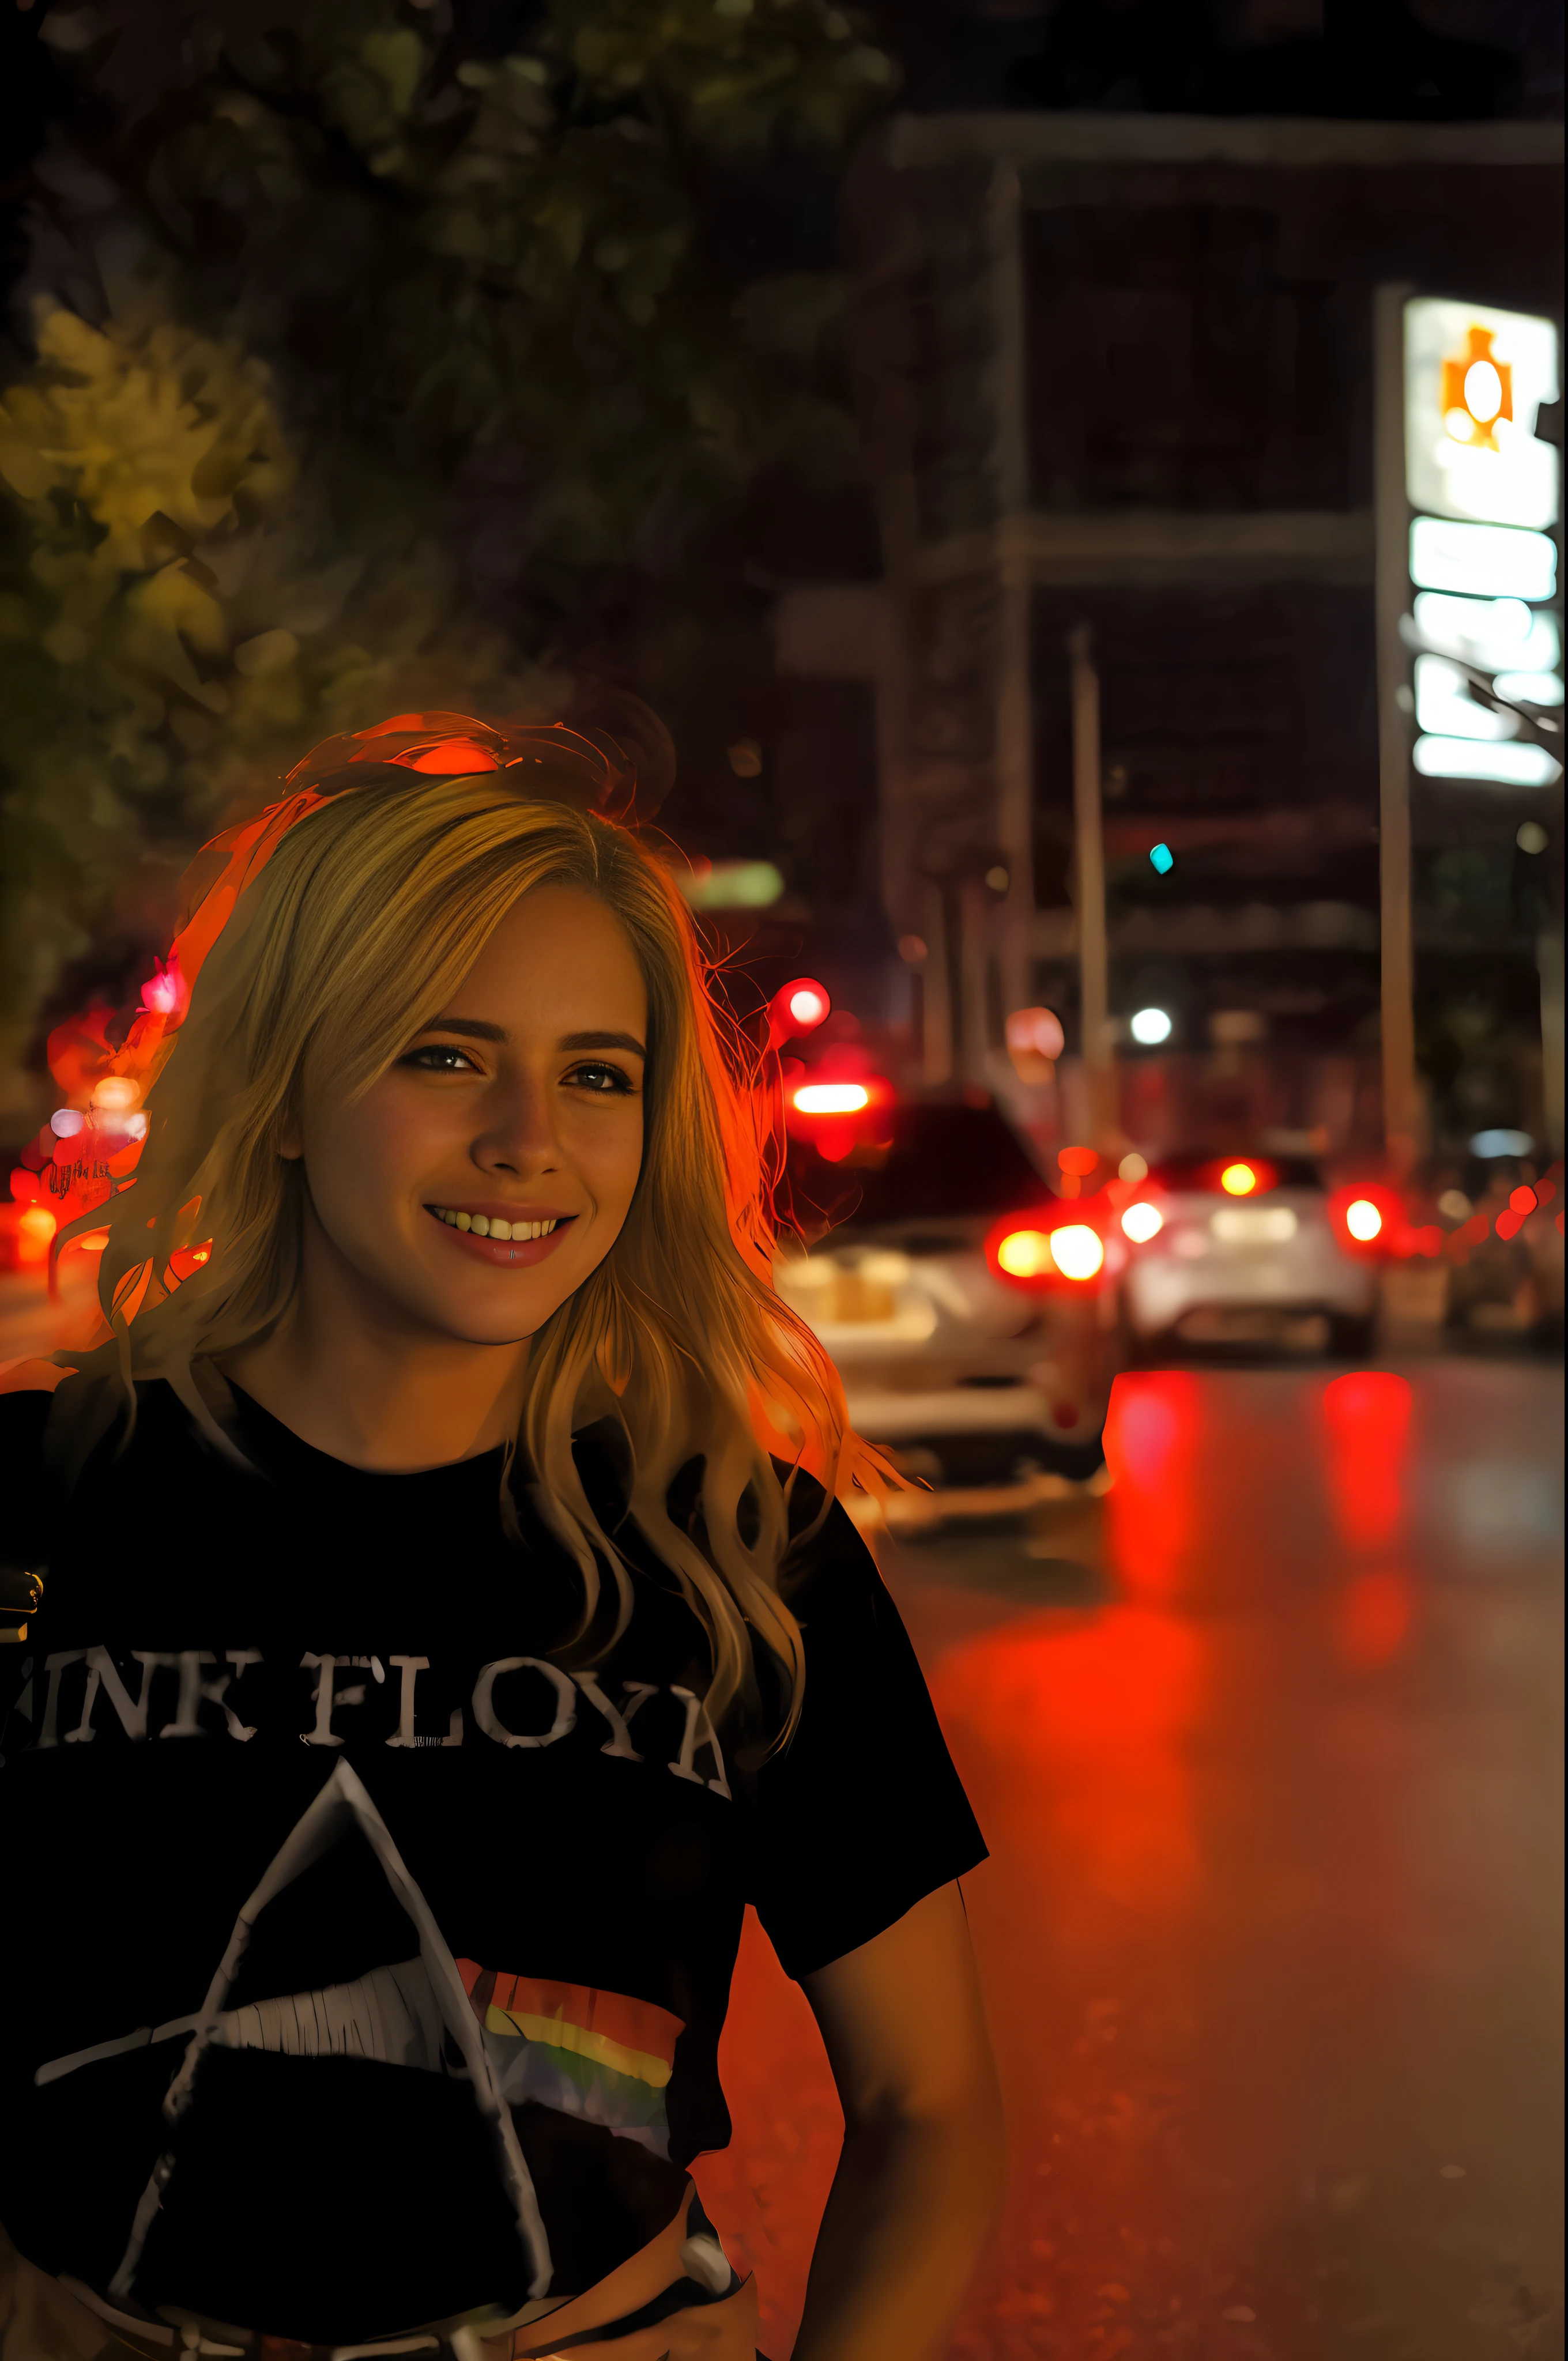 шедевр, невероятно детализированная американская блондинка в нижнем белье моделирует ночью на обочине дороги, уличное фото, трендовая городская фотография с разрешением 500 пикселей, на яркой улице Лас-Вегаса, сложная ночная фотография, повседневная фотография, Тамблер, фотография года, инста картинка, картинка дня, инстафото, фото плаката, Автофокус,  невероятно острый, ультрадетализированное лицо и глаза, внимание к детали, нет ошибок, никаких искажений, белая кожа, чистый, прекрасный, не размытая кожа, снято на пентакс к1000, глубина резкости, фон не в фокусе,